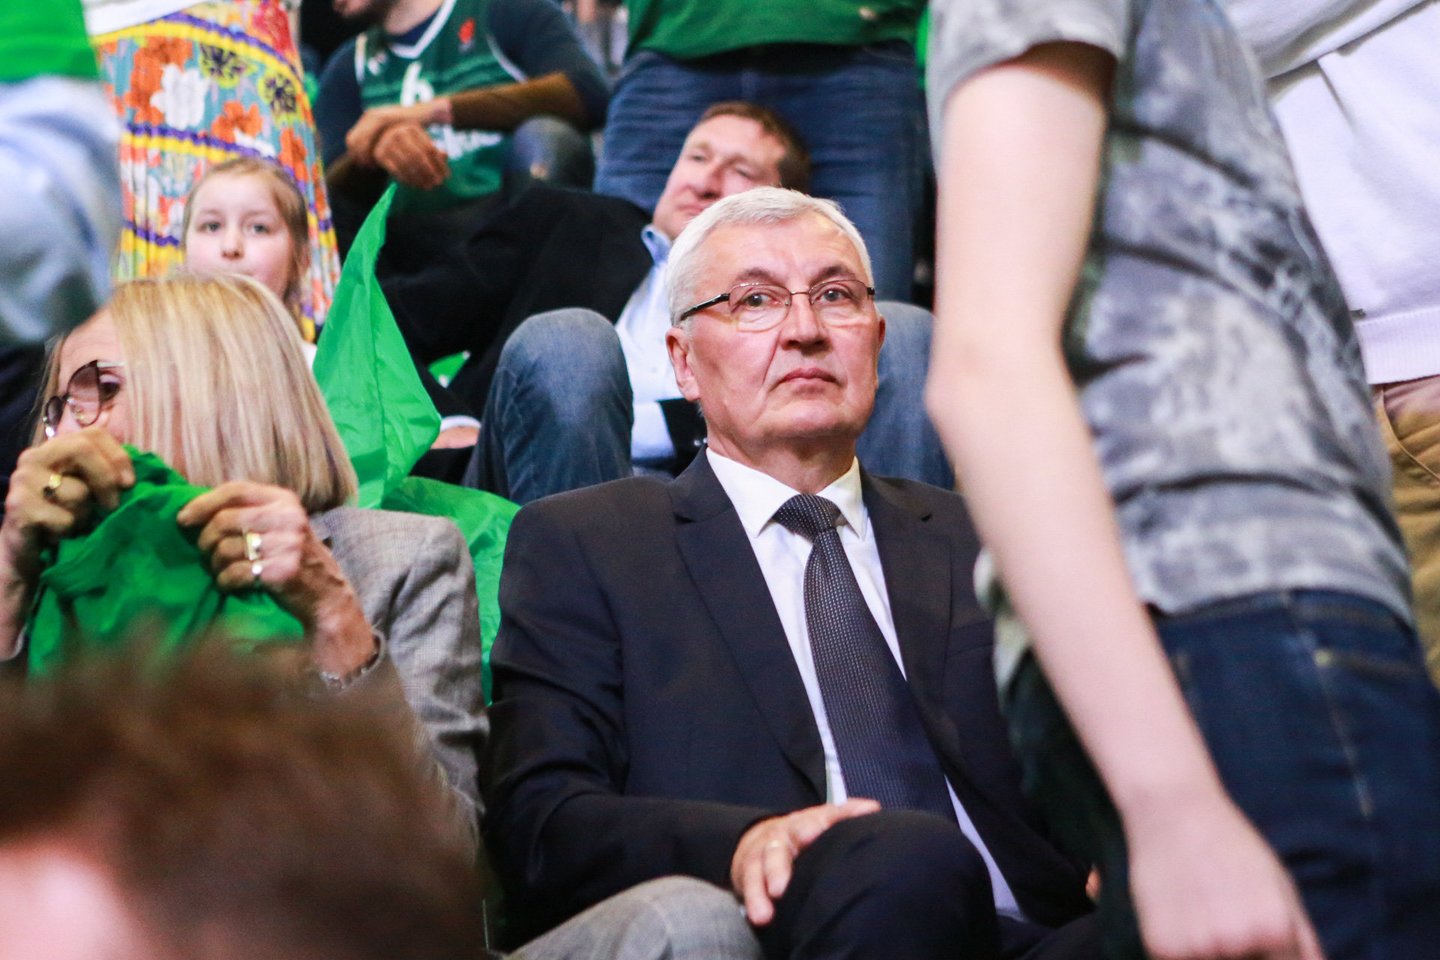 Kauno „Žalgirio“ arenoje pasirodė gausybė Lietuvos krepšinio veidų. <br>G. Bitvinsko nuotr. 